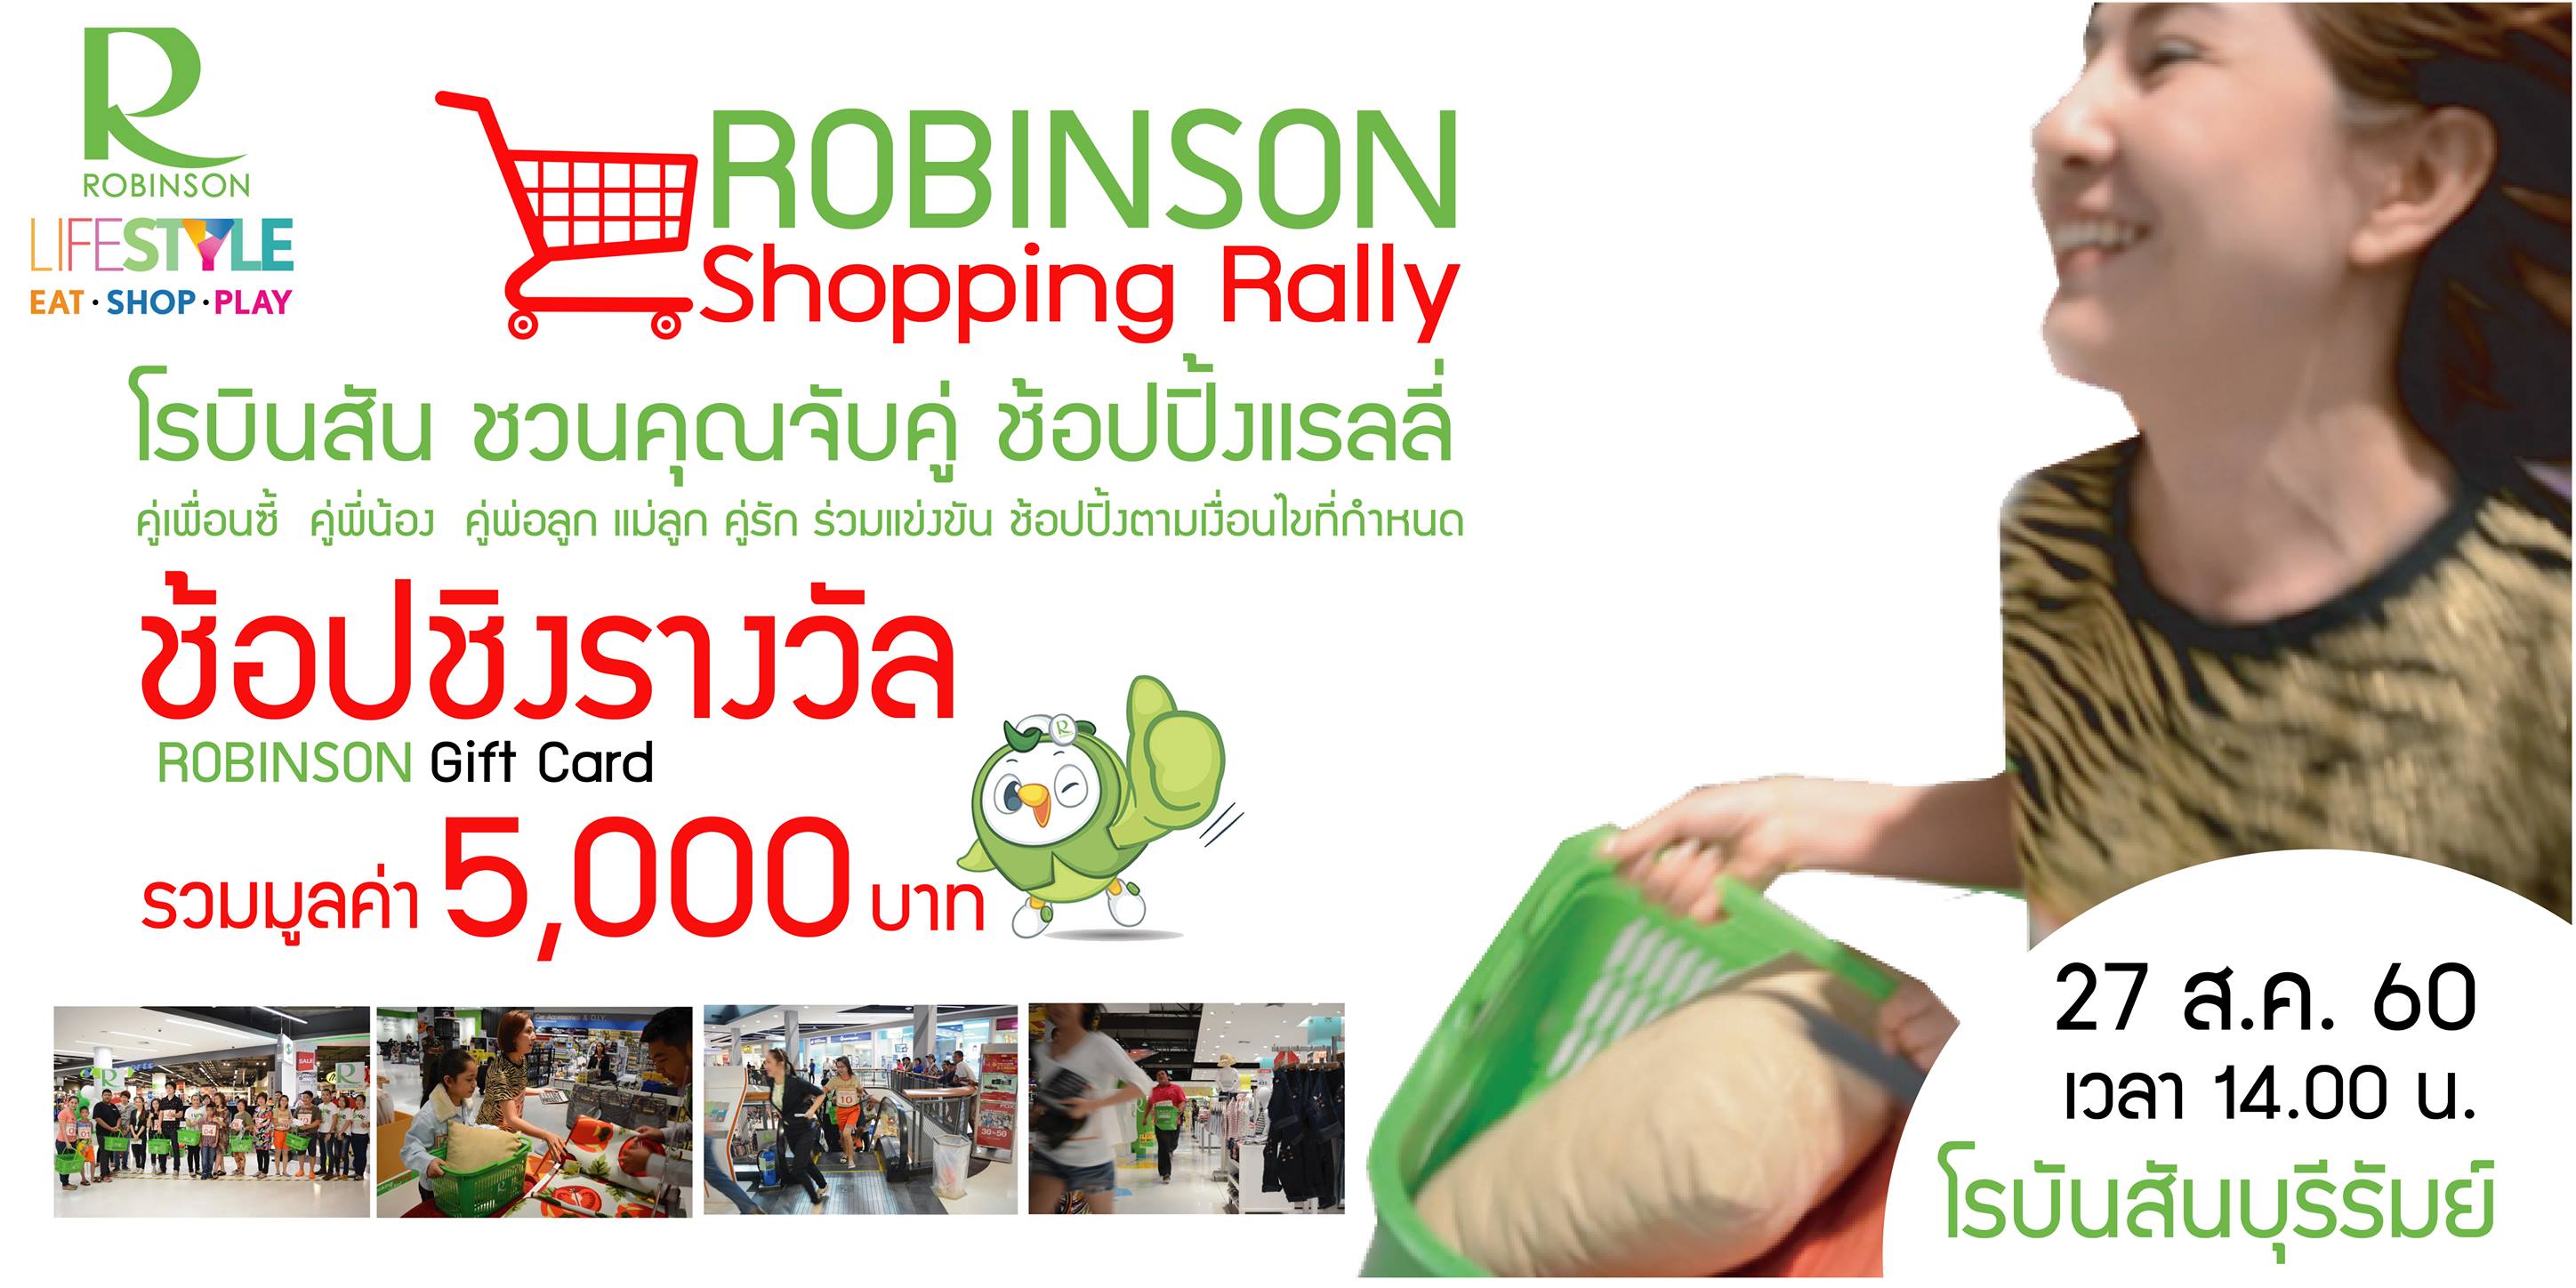 Robinson Shopping Rally